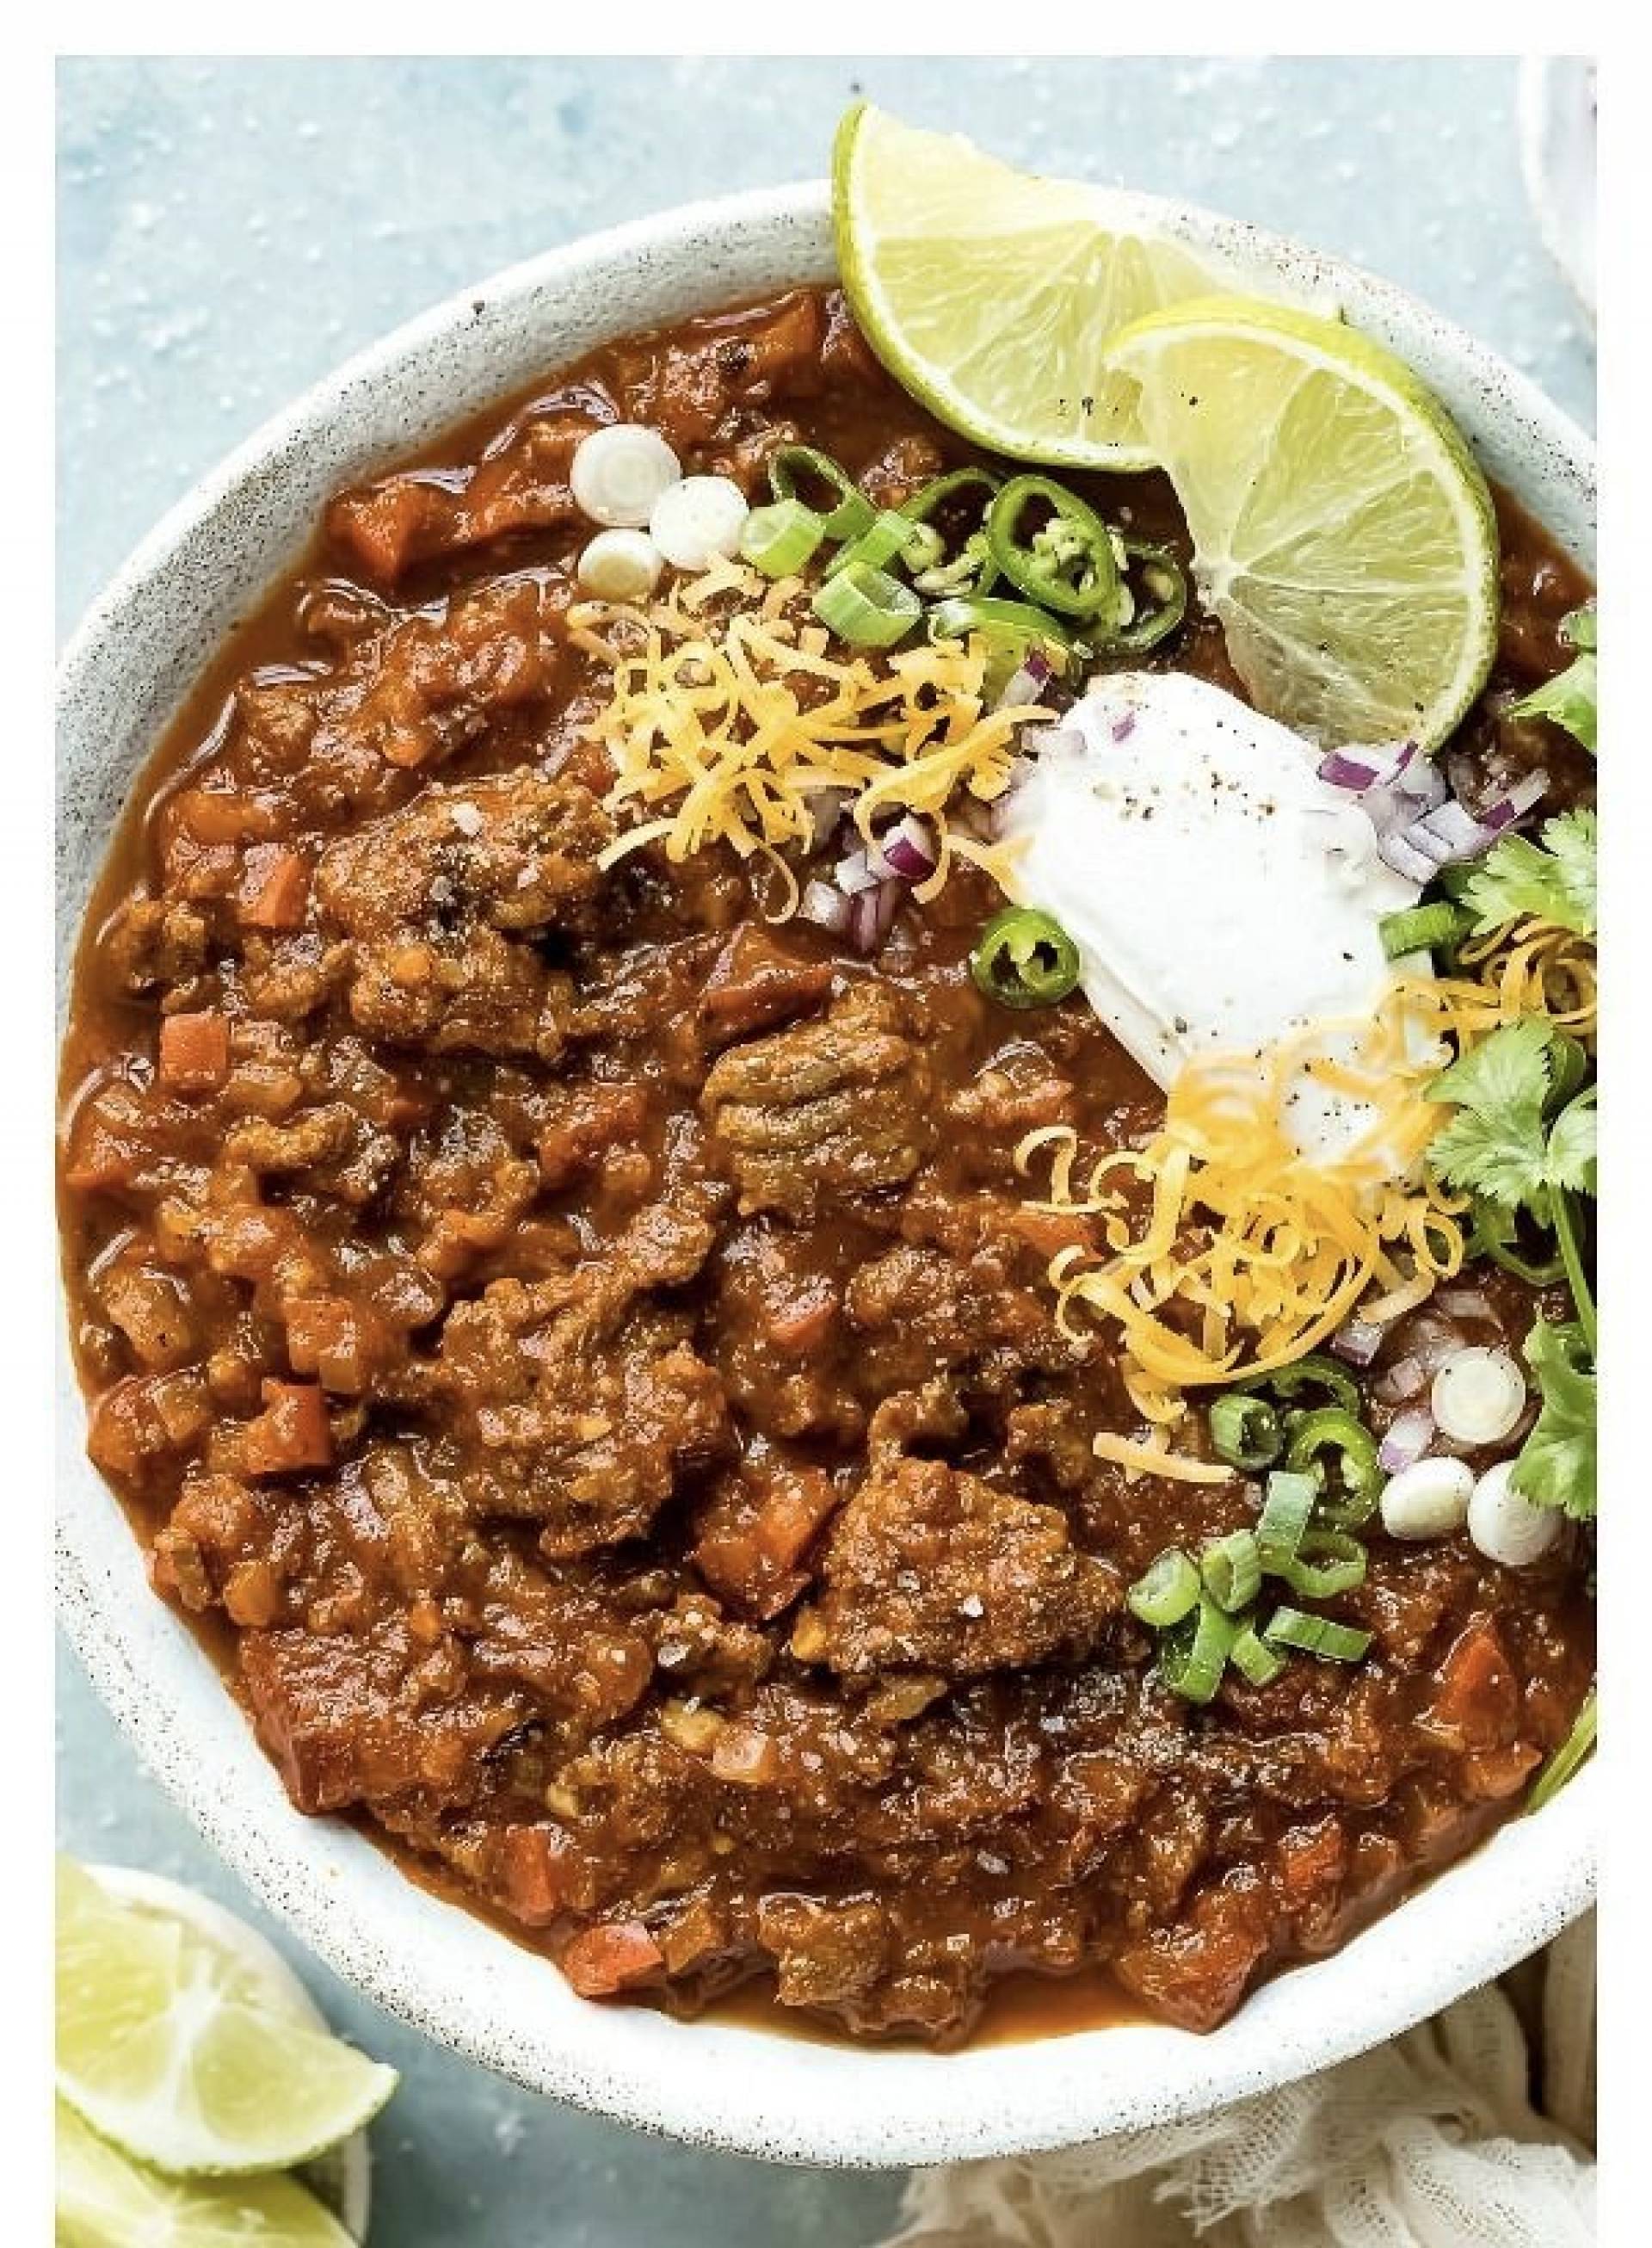 Turkey chili + quinoa